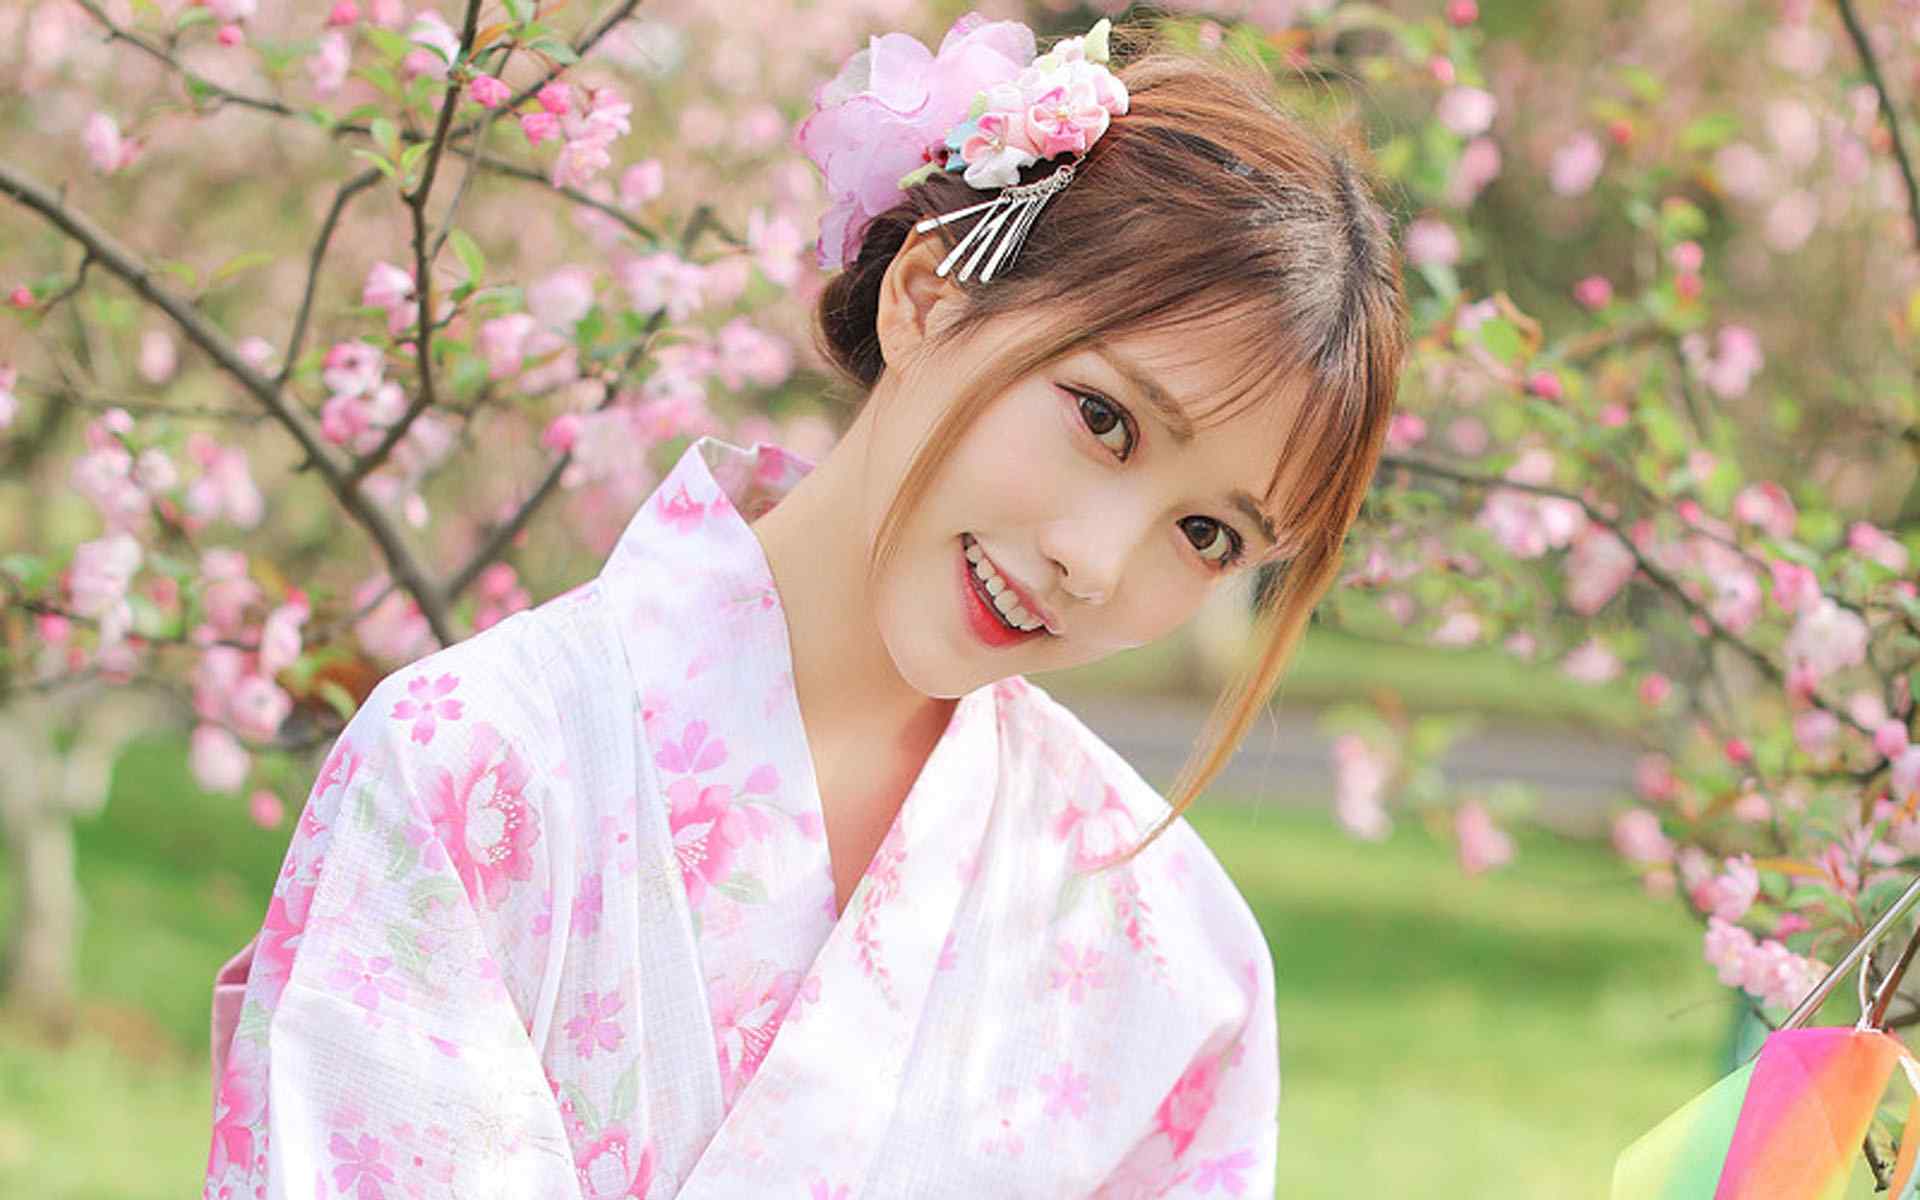 日本美女壁纸大眼睛灵动美女和服写真图片电脑壁纸性感美腿美女制服艺术摄影